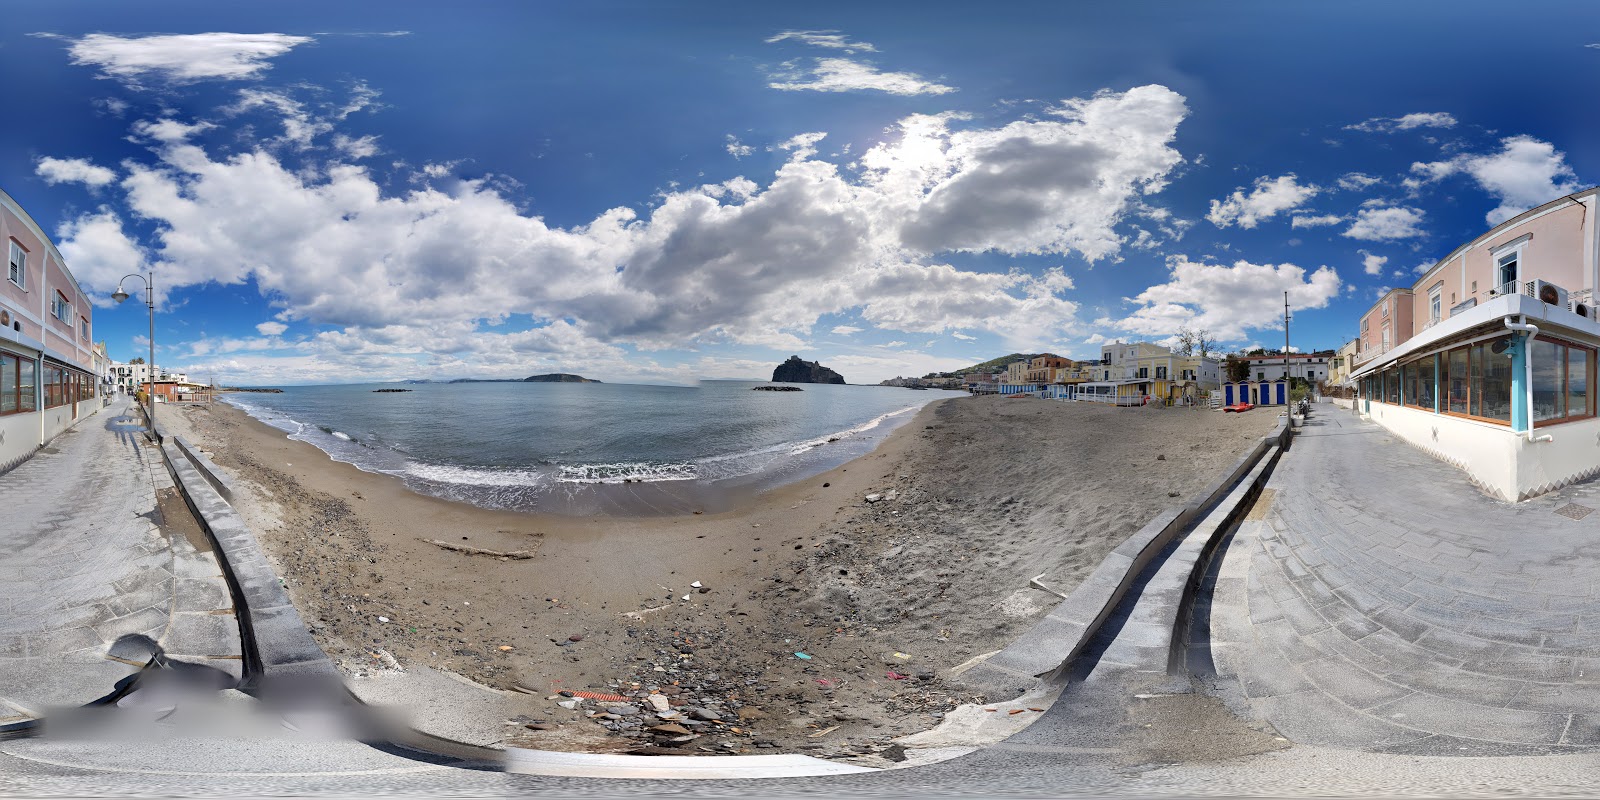 Spiaggia dei Pescatori的照片 带有蓝色纯水表面